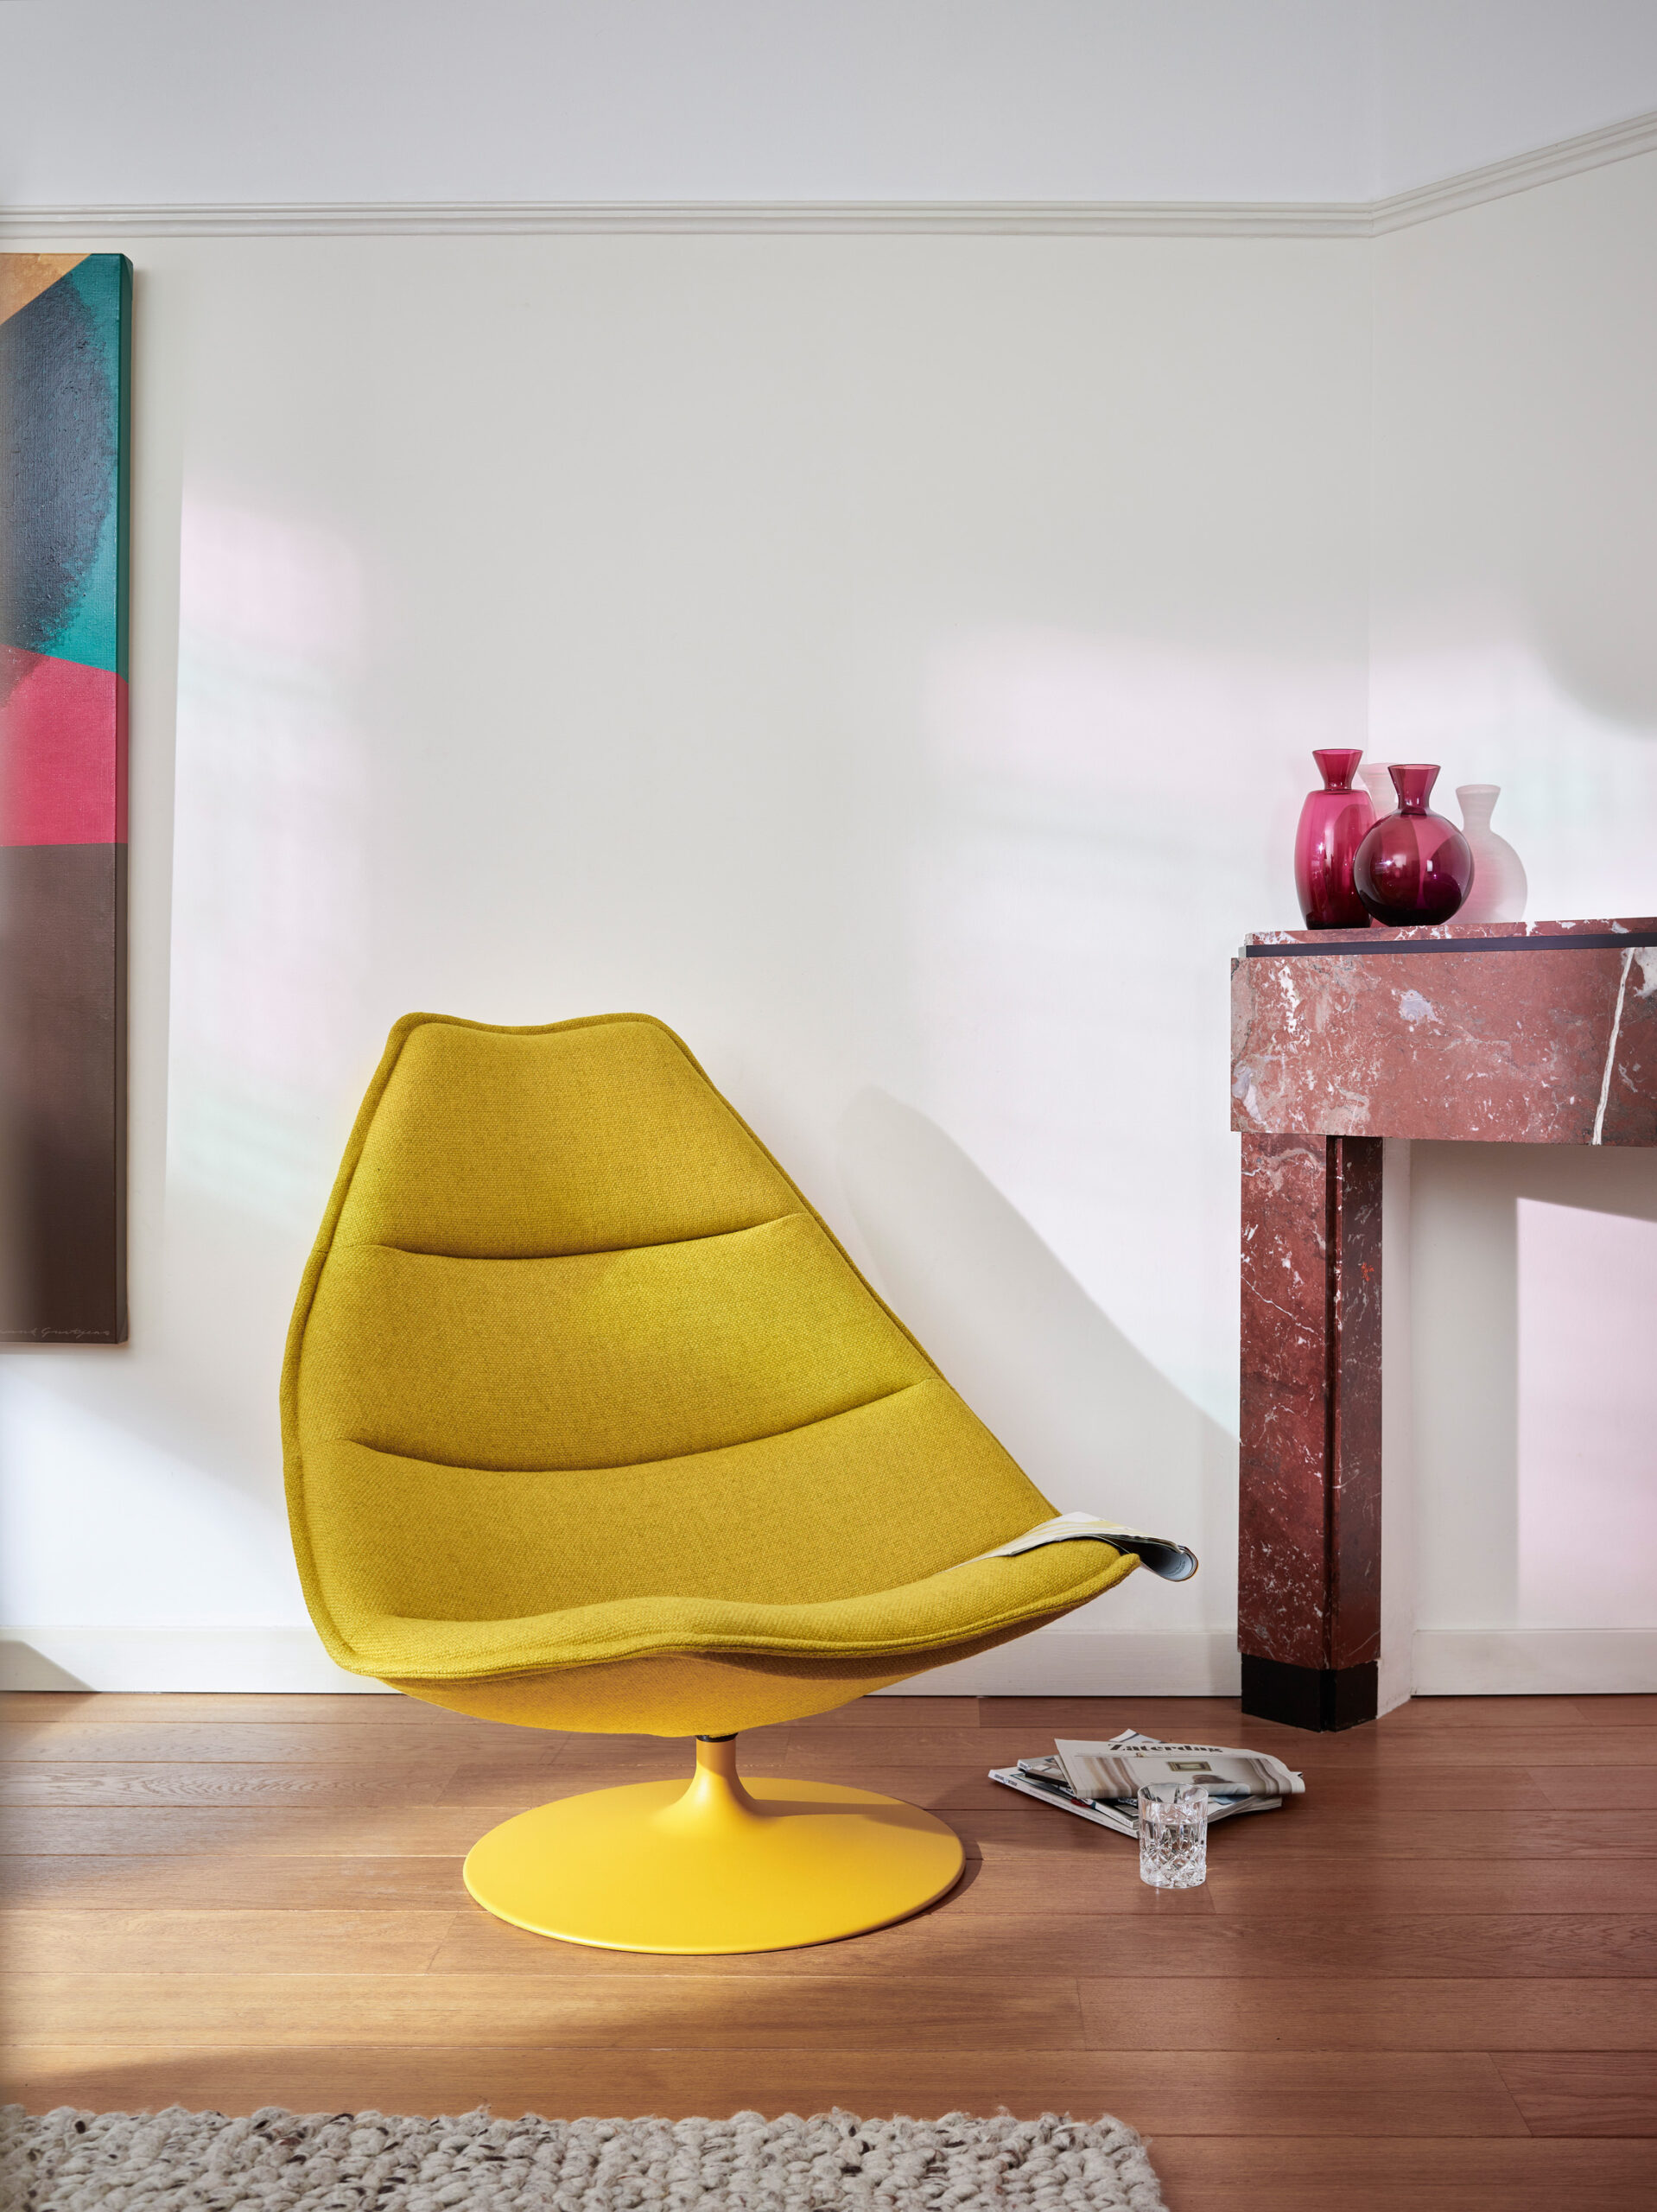 Ja het kan: geel! Een hele gele fauteuil van voet tot schelp. Deze Artifort F585 zit niet alleen heel lekker, hij vrolijkt de hele ruimte op. 